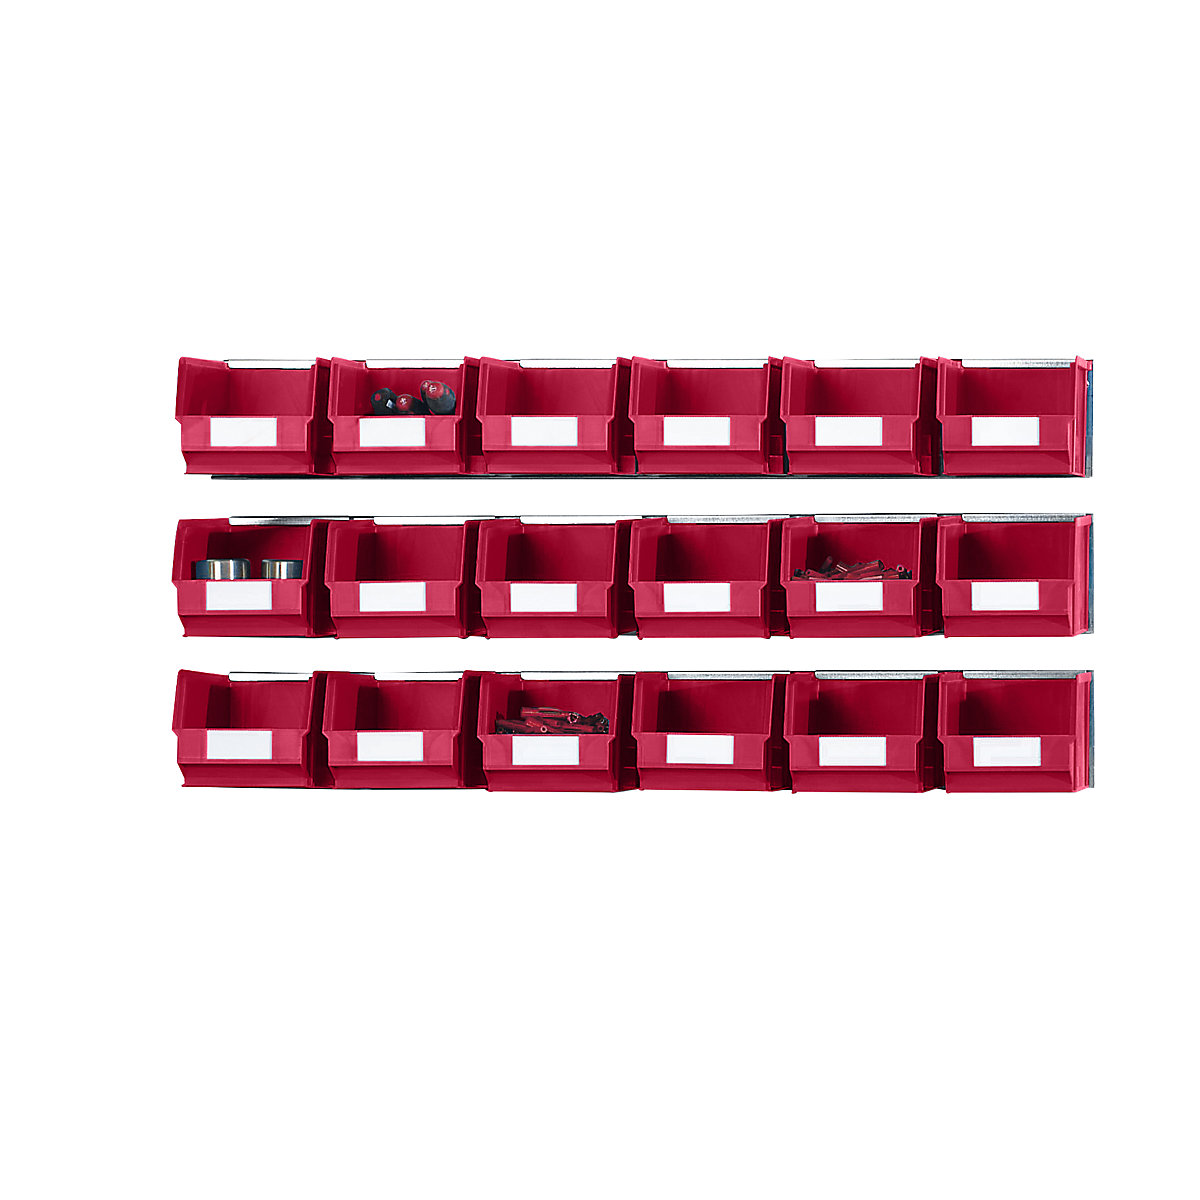 Conjunto de réguas para encaixe com caixas de armazenagem à vista, 3 réguas, 18 caixas, vermelho-4